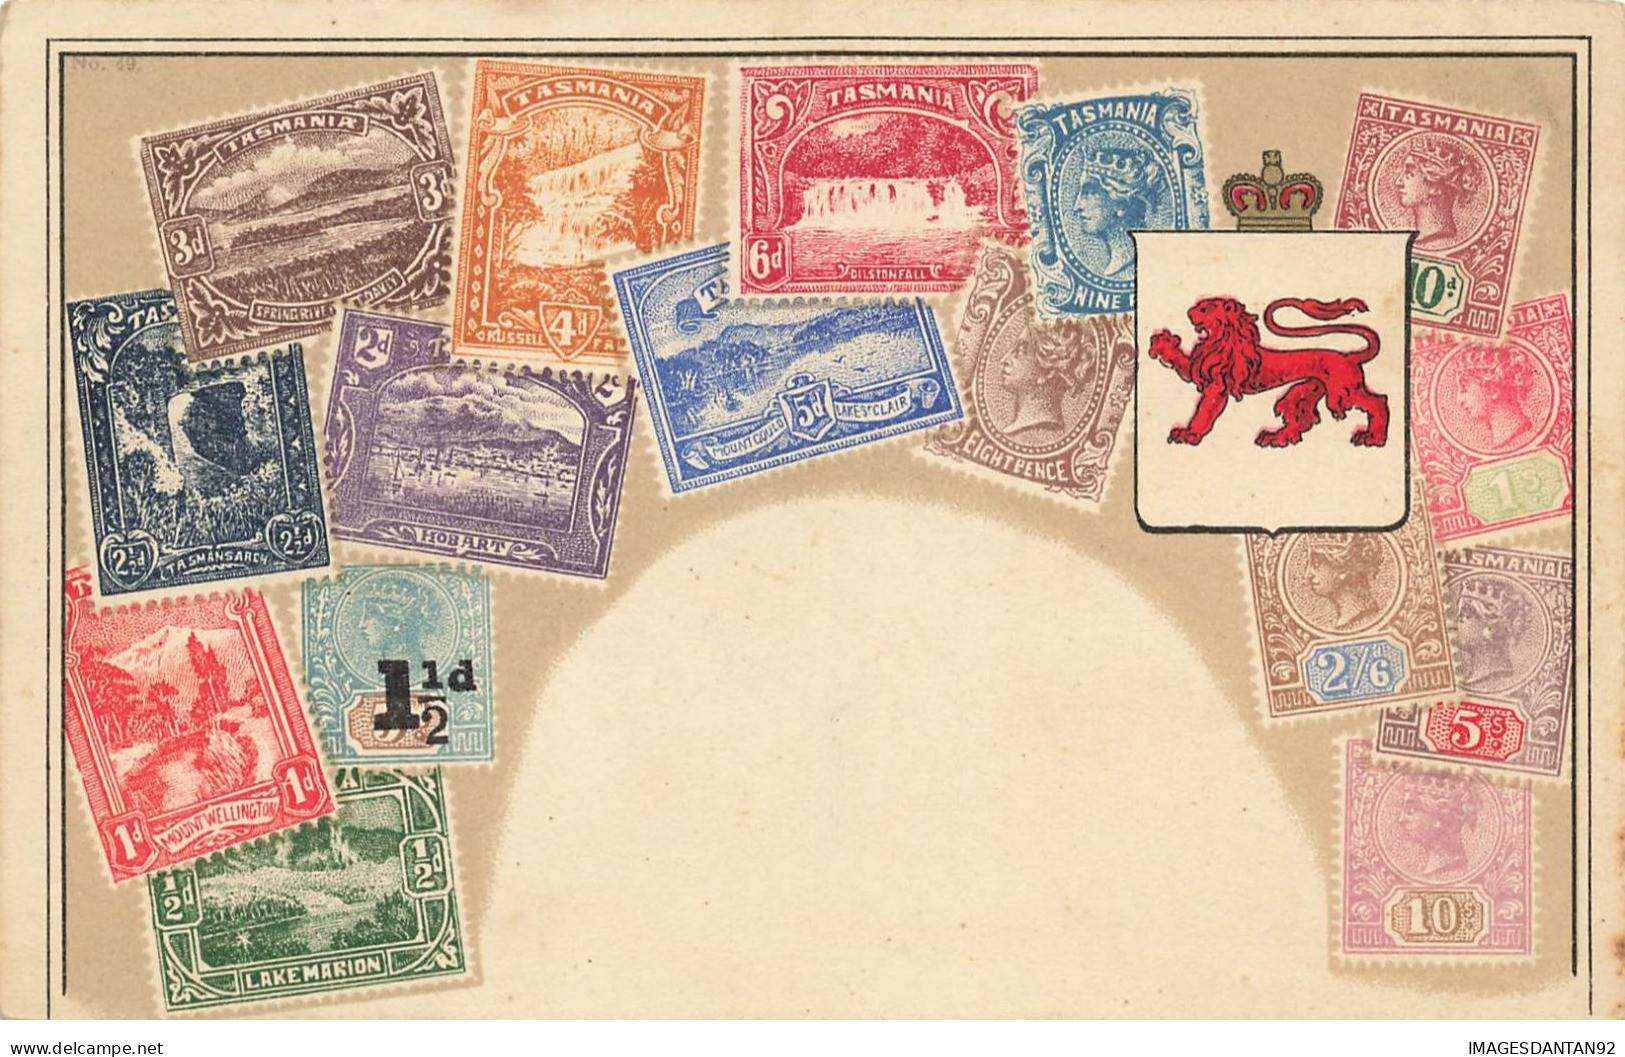 TIMBRES REPRESENTATION #MK33319 PHILATELIQUE TASMANIE TASMANIA ARMOIRIE BLASON - Briefmarken (Abbildungen)